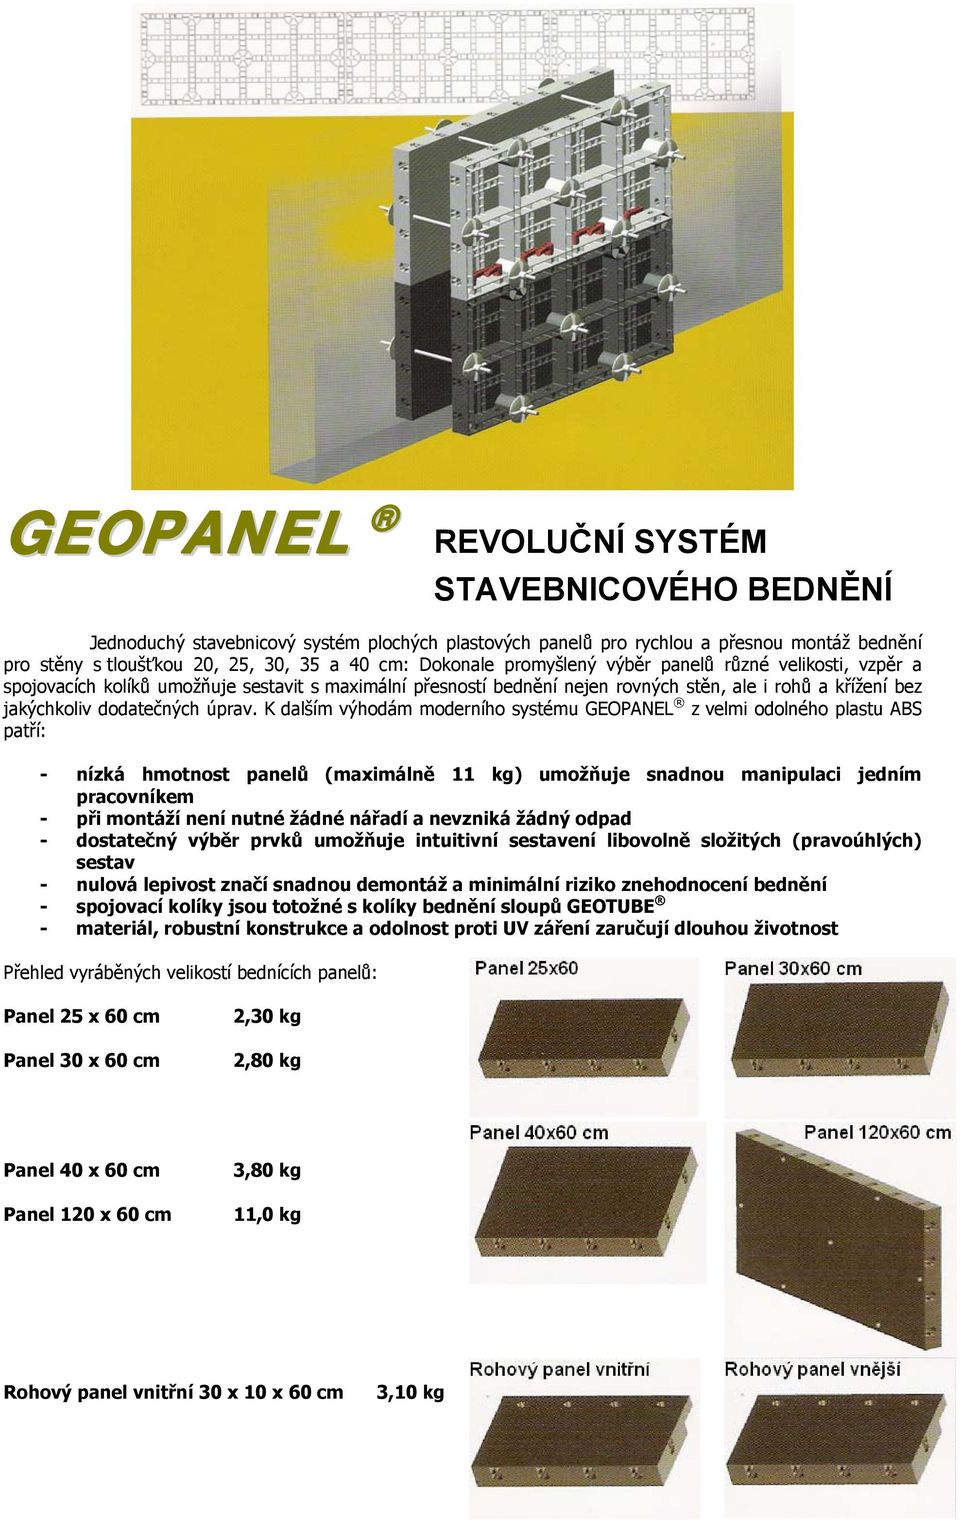 K dalším výhodám moderního systému GEOPANEL z velmi odolného plastu ABS patří: - nízká hmotnost panelů (maximálně 11 kg) umožňuje snadnou manipulaci jedním pracovníkem - při montáží není nutné žádné